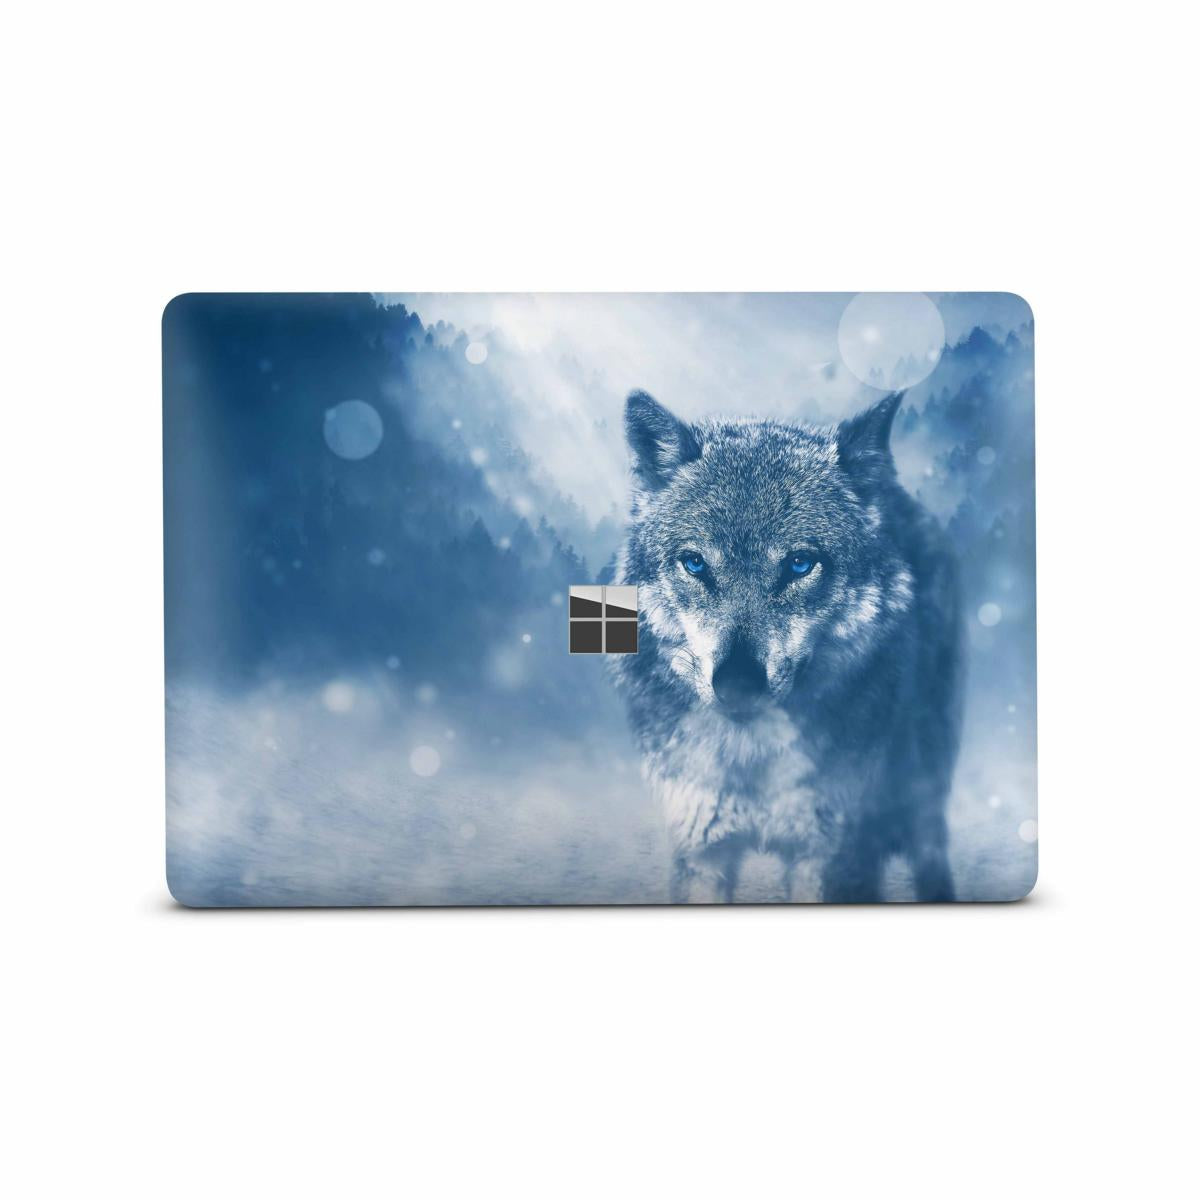 Microsoft Surface Book 2 Skin 15" Premium Vinylfolie Kratzerschutz Design Wolf blue Eyes Elektronik-Sticker & -Aufkleber Skins4u   